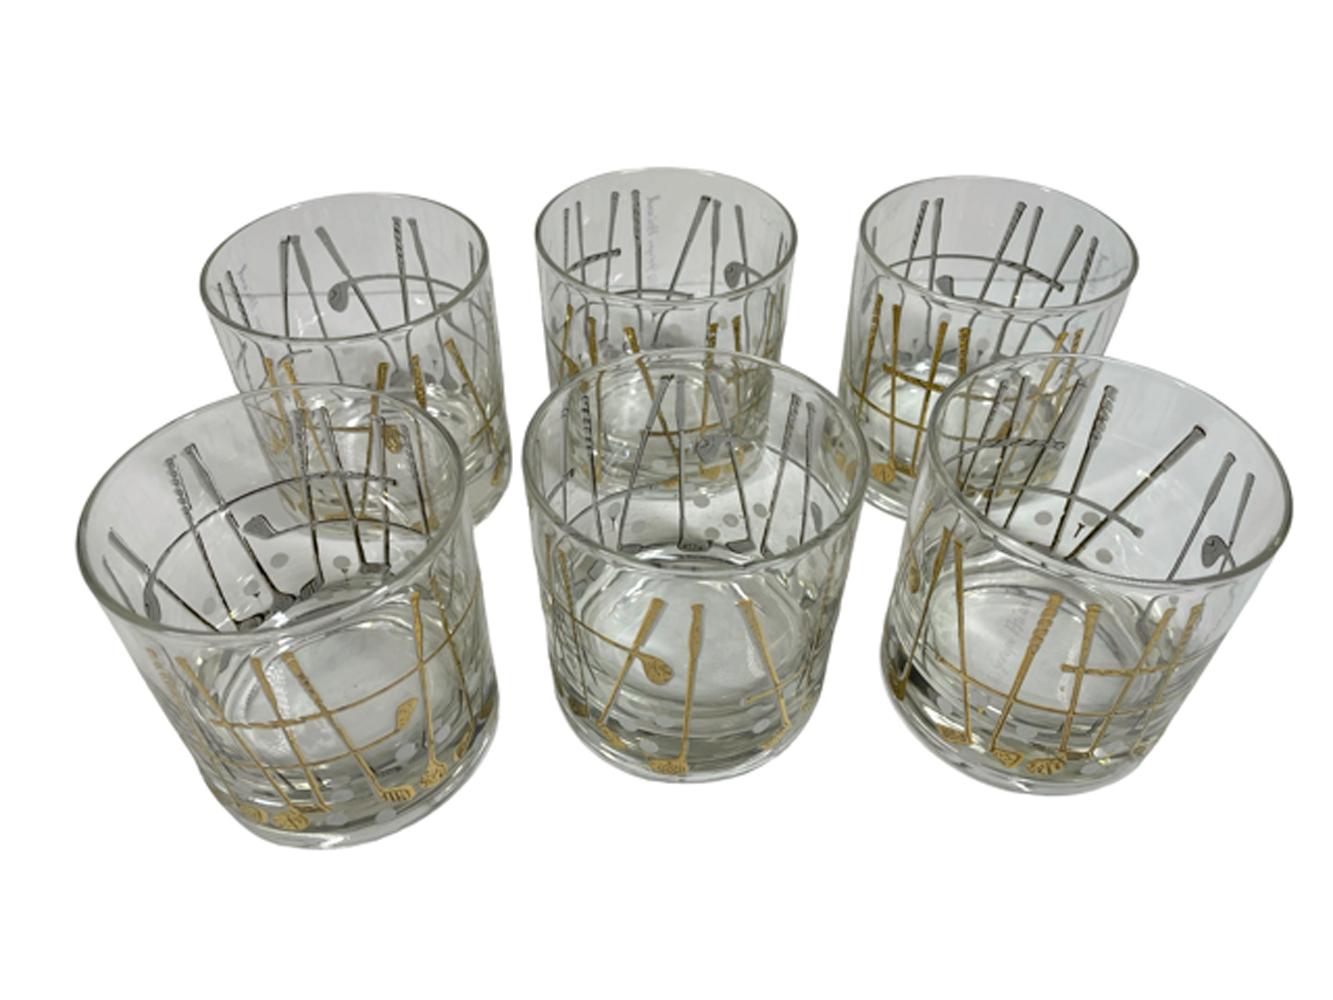 Six verres à whisky Georges Briard sur le thème du golf, avec des clubs en relief en or 22 carats et des balles de golf en émail blanc.